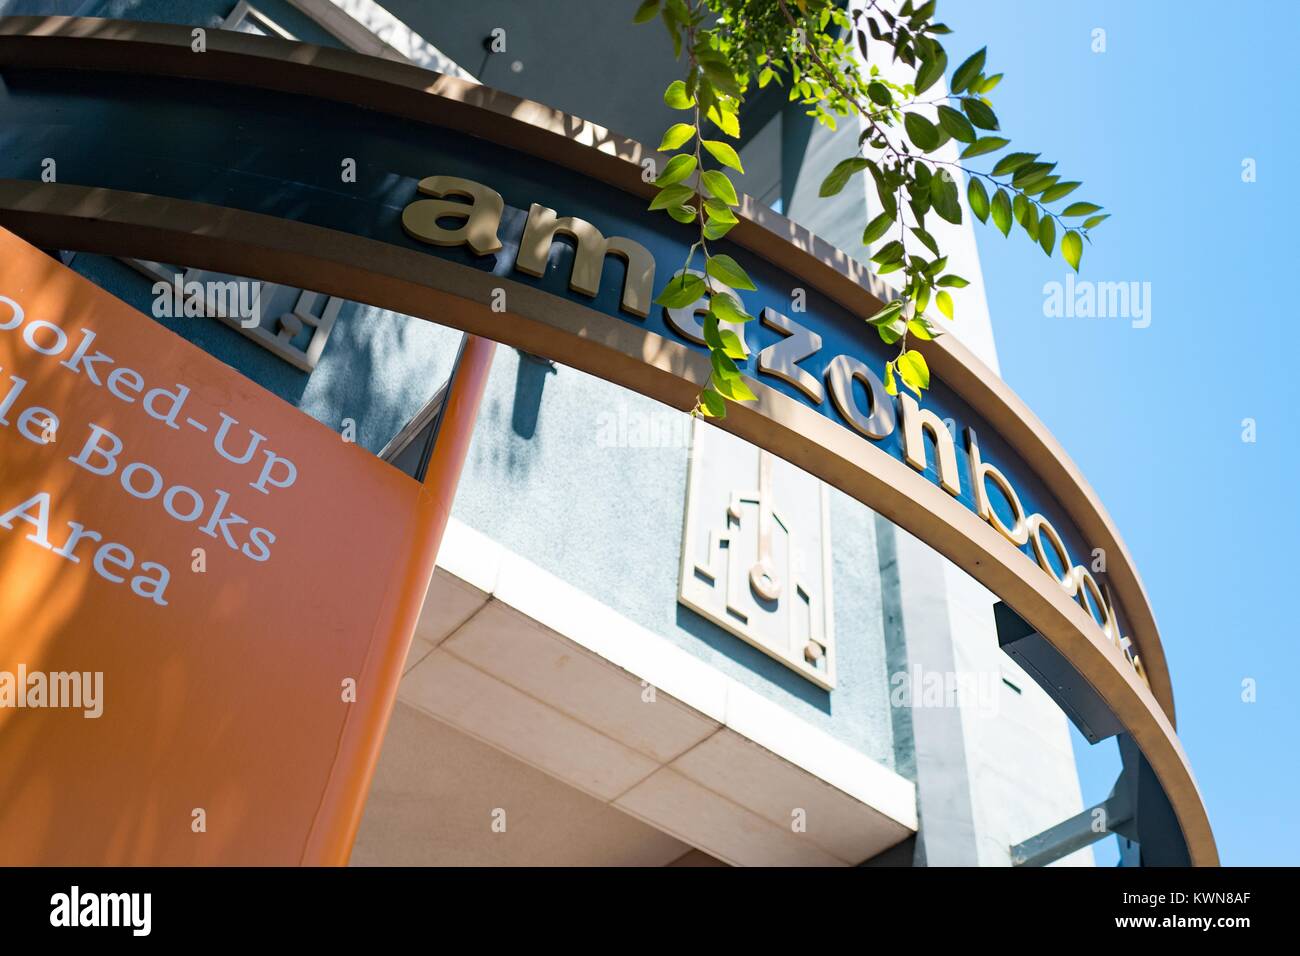 Libre d'affiches pour un nouveau magasin de détail physique Amazon Books à Santana Row, un centre commercial haut de gamme dans la Silicon Valley ville de San Jose, Californie, le 21 juillet 2017. Banque D'Images